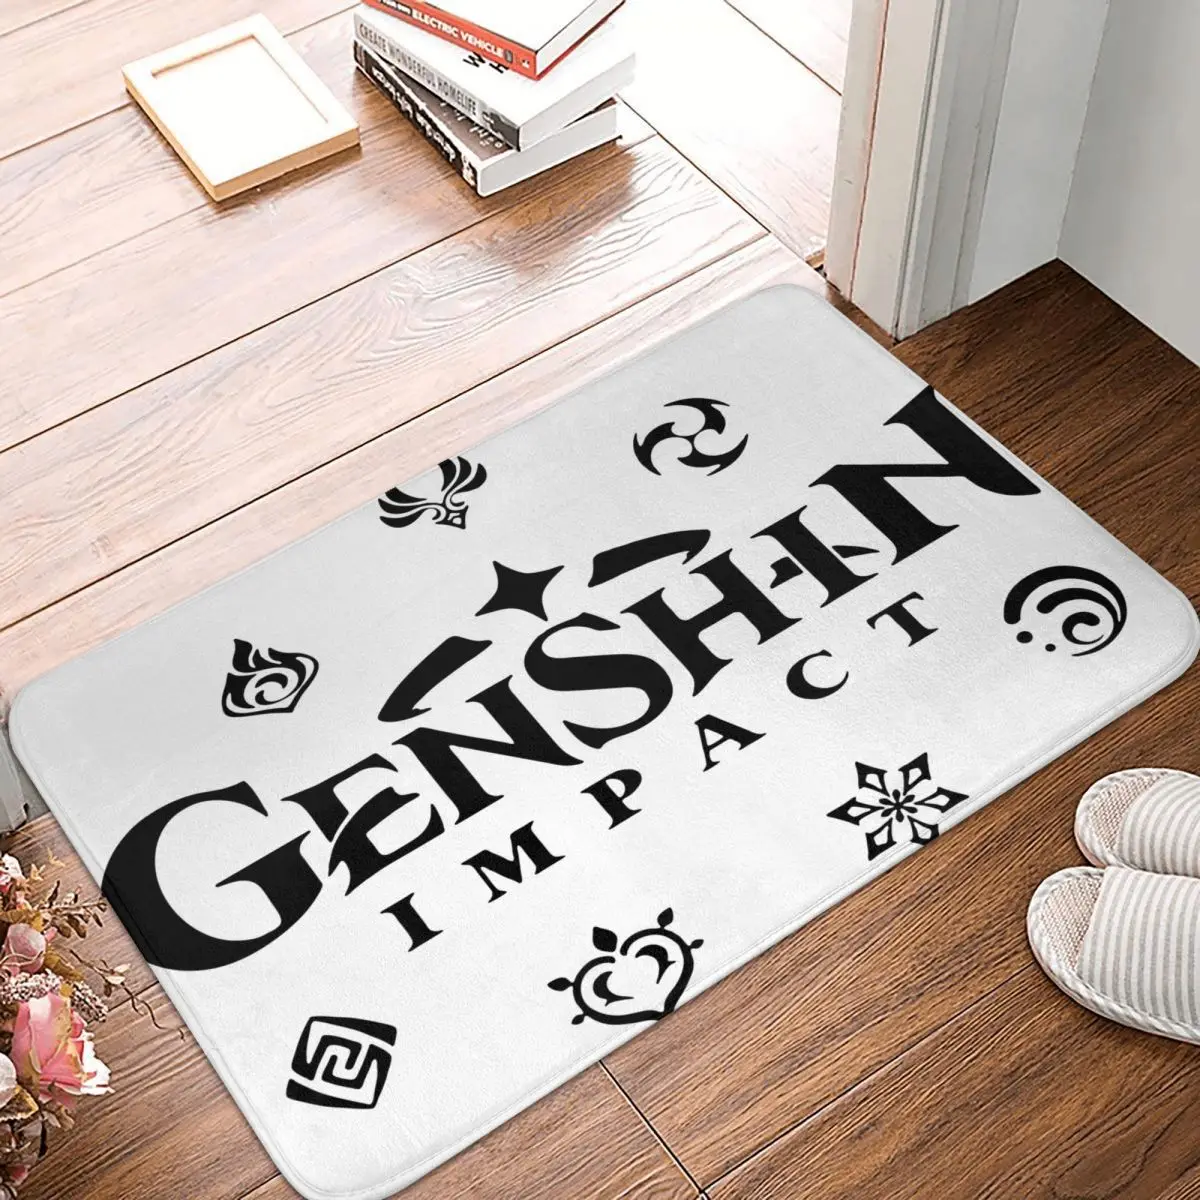 Genshin השפעה אלמנטים שטיחון אמבטיה מודפס Polyeste הכניסה הביתה שטיח אנימה עיצוב הרצפה שטיח מחצלת דלת שטיחים שטח